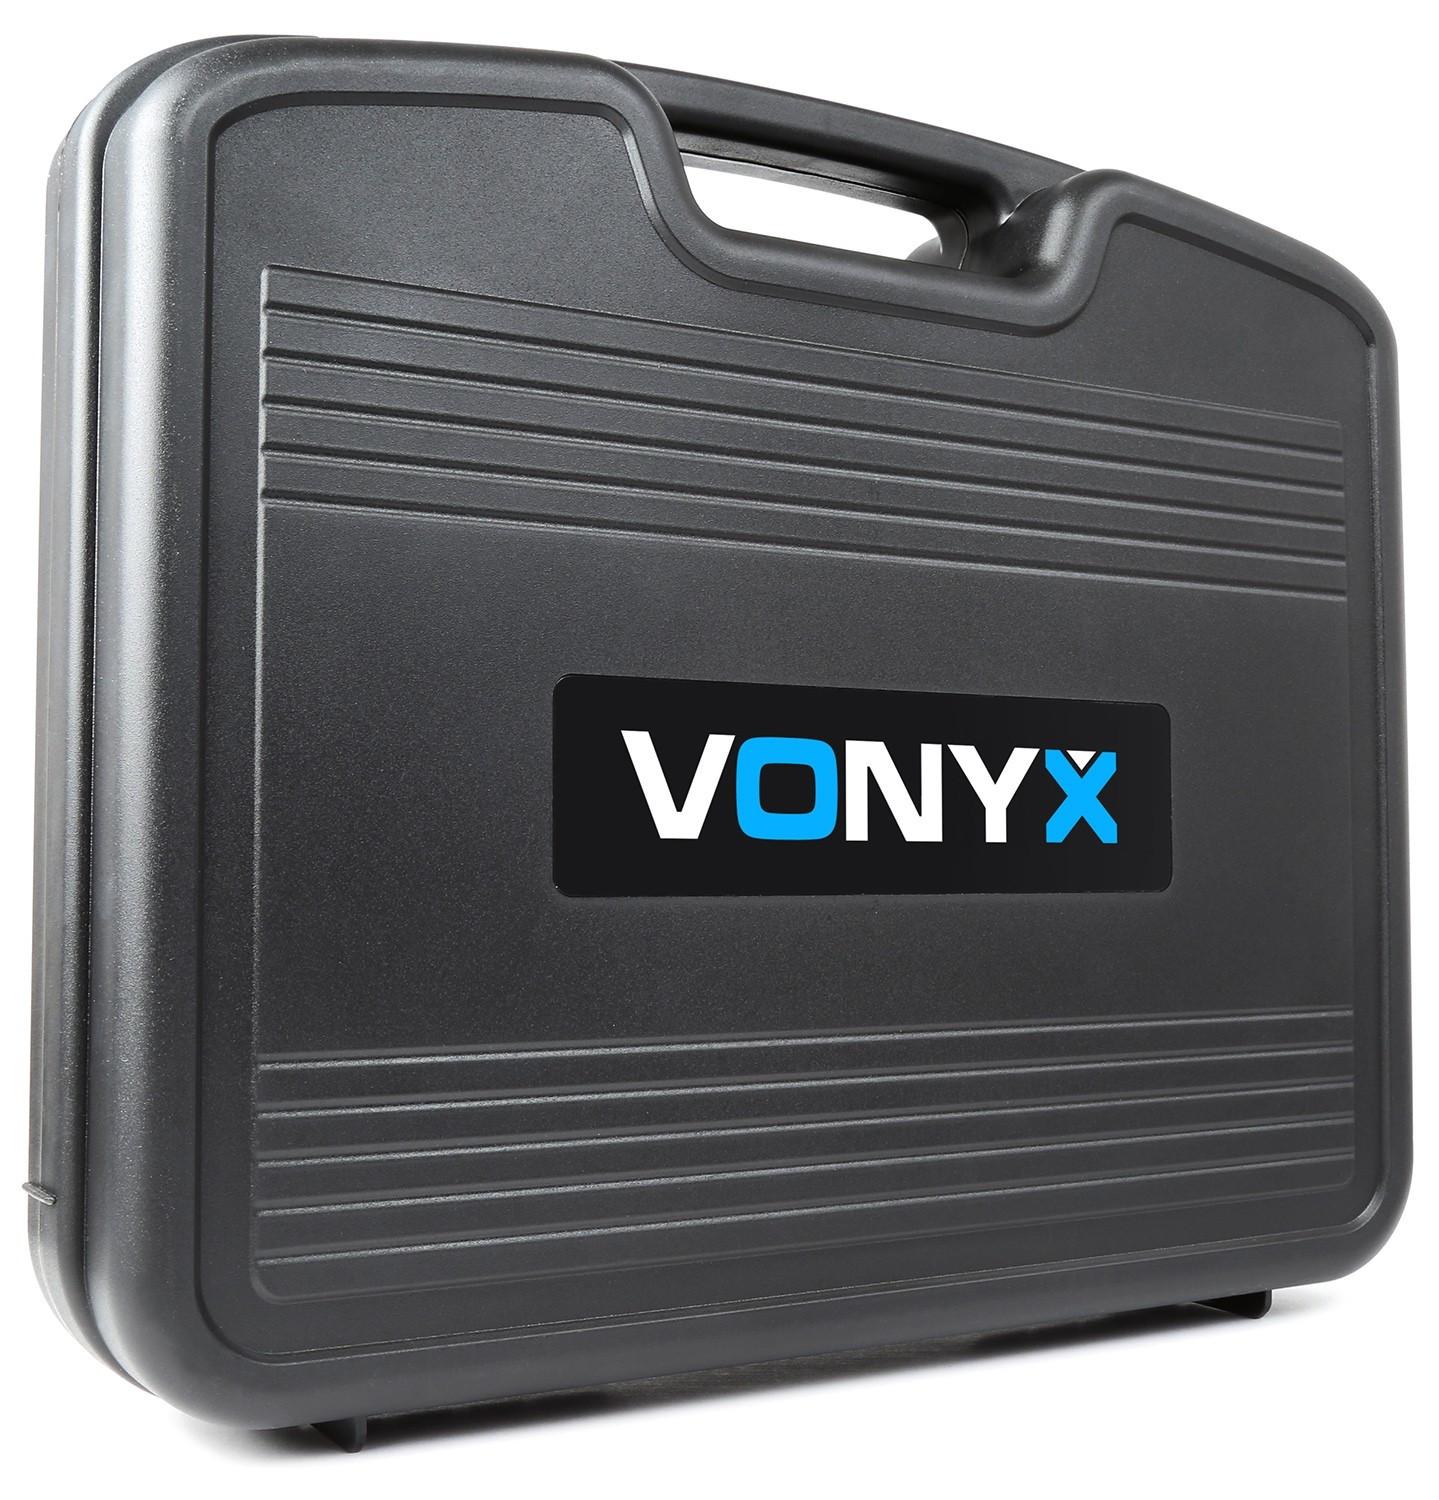 Vonyx  Vonyx WM82 